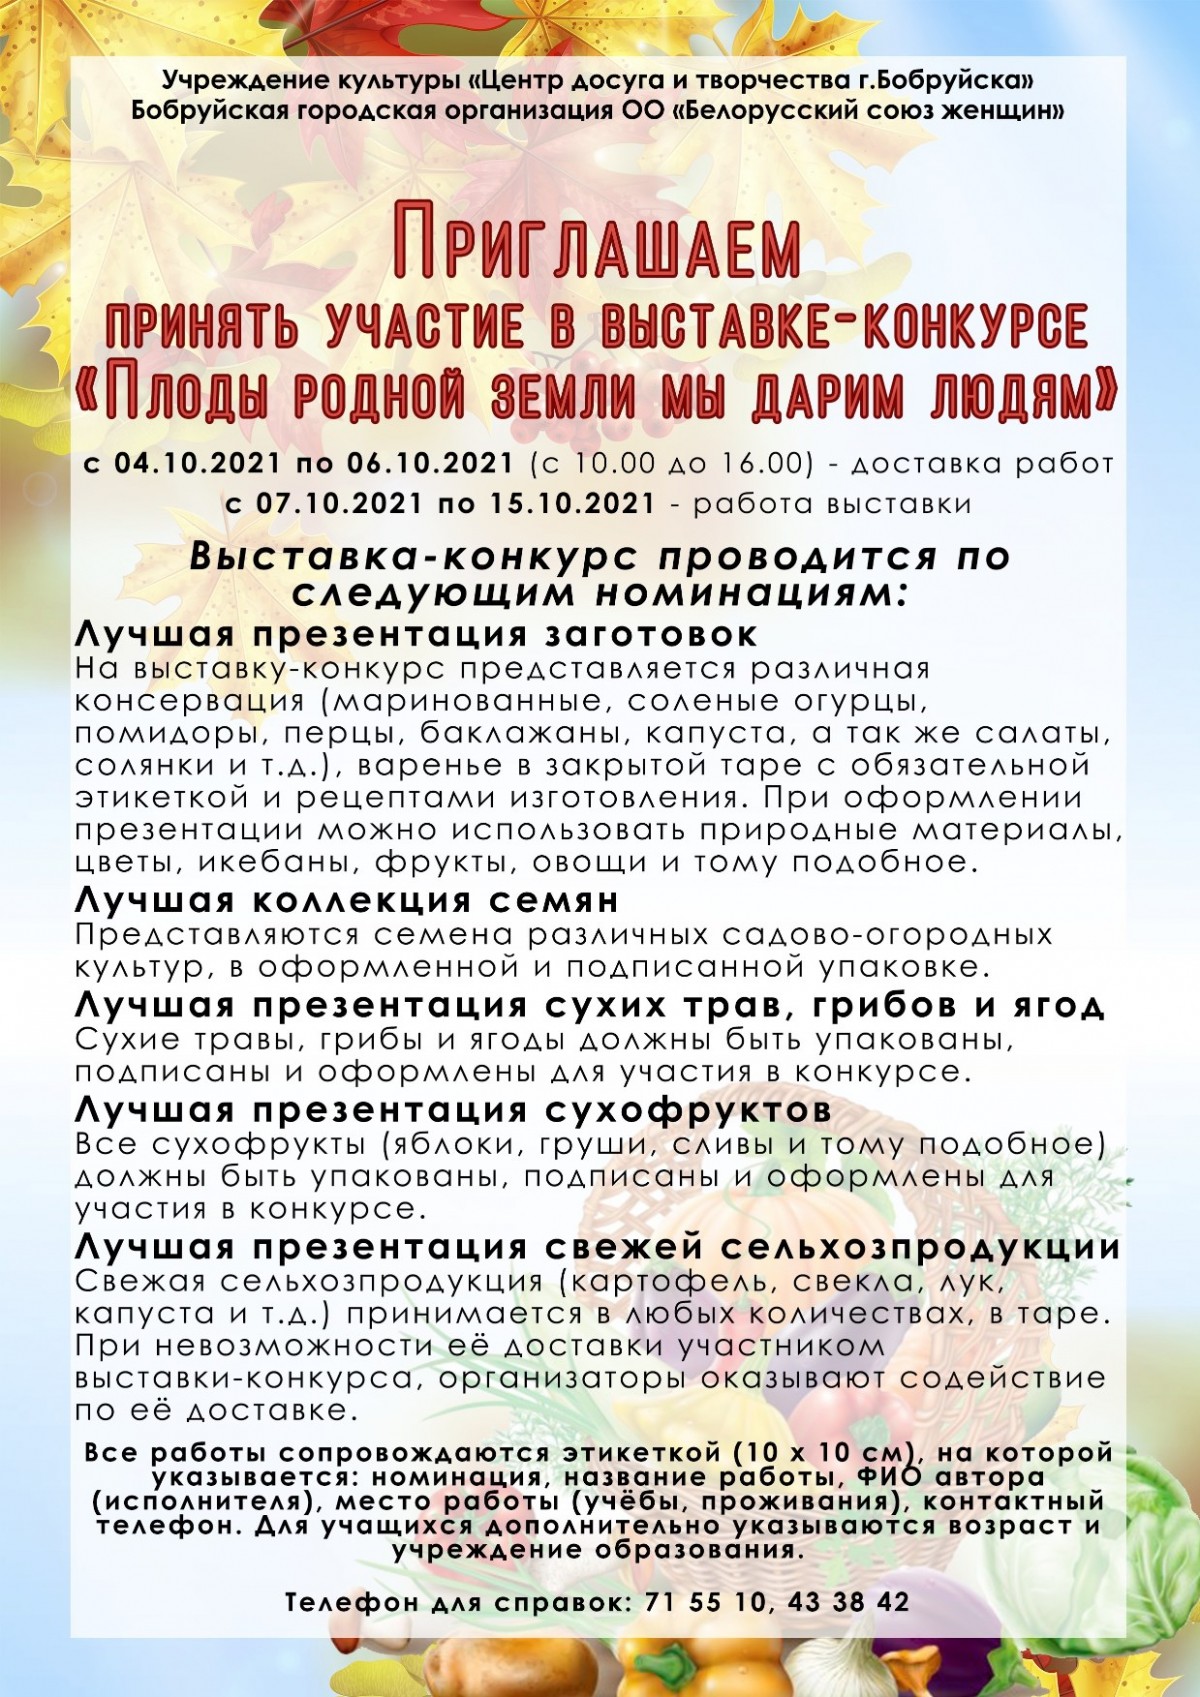 Бобруйчан приглашают принять участие в благотворительной выставке